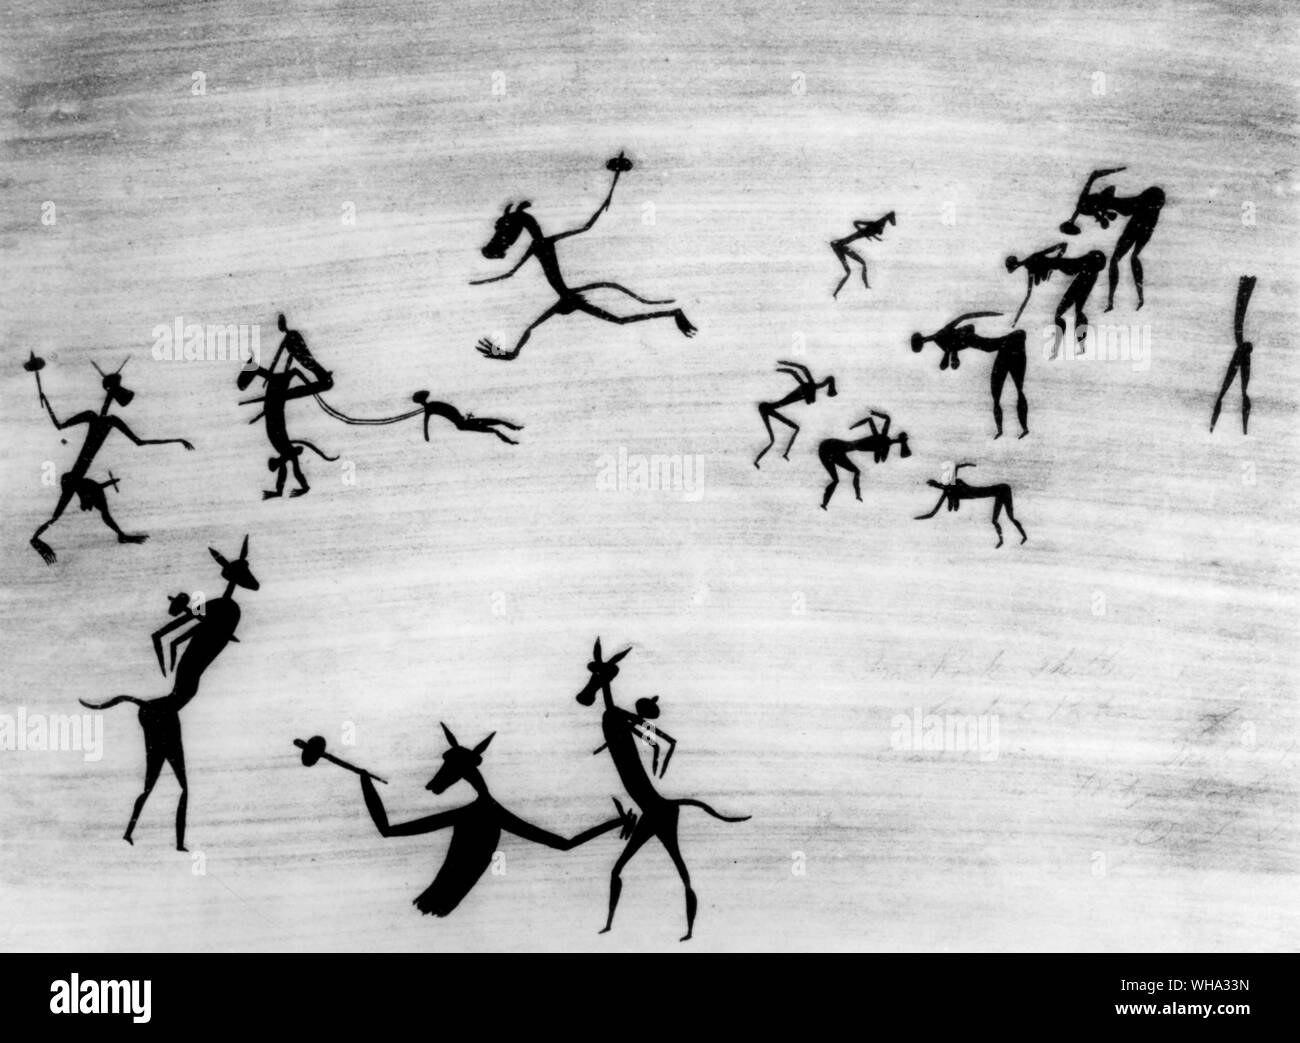 Peinture rupestre Bushman. L'Mokoma danse, en haut à droite avec les démons mythiques emportant les hommes de 'hard'. Banque D'Images